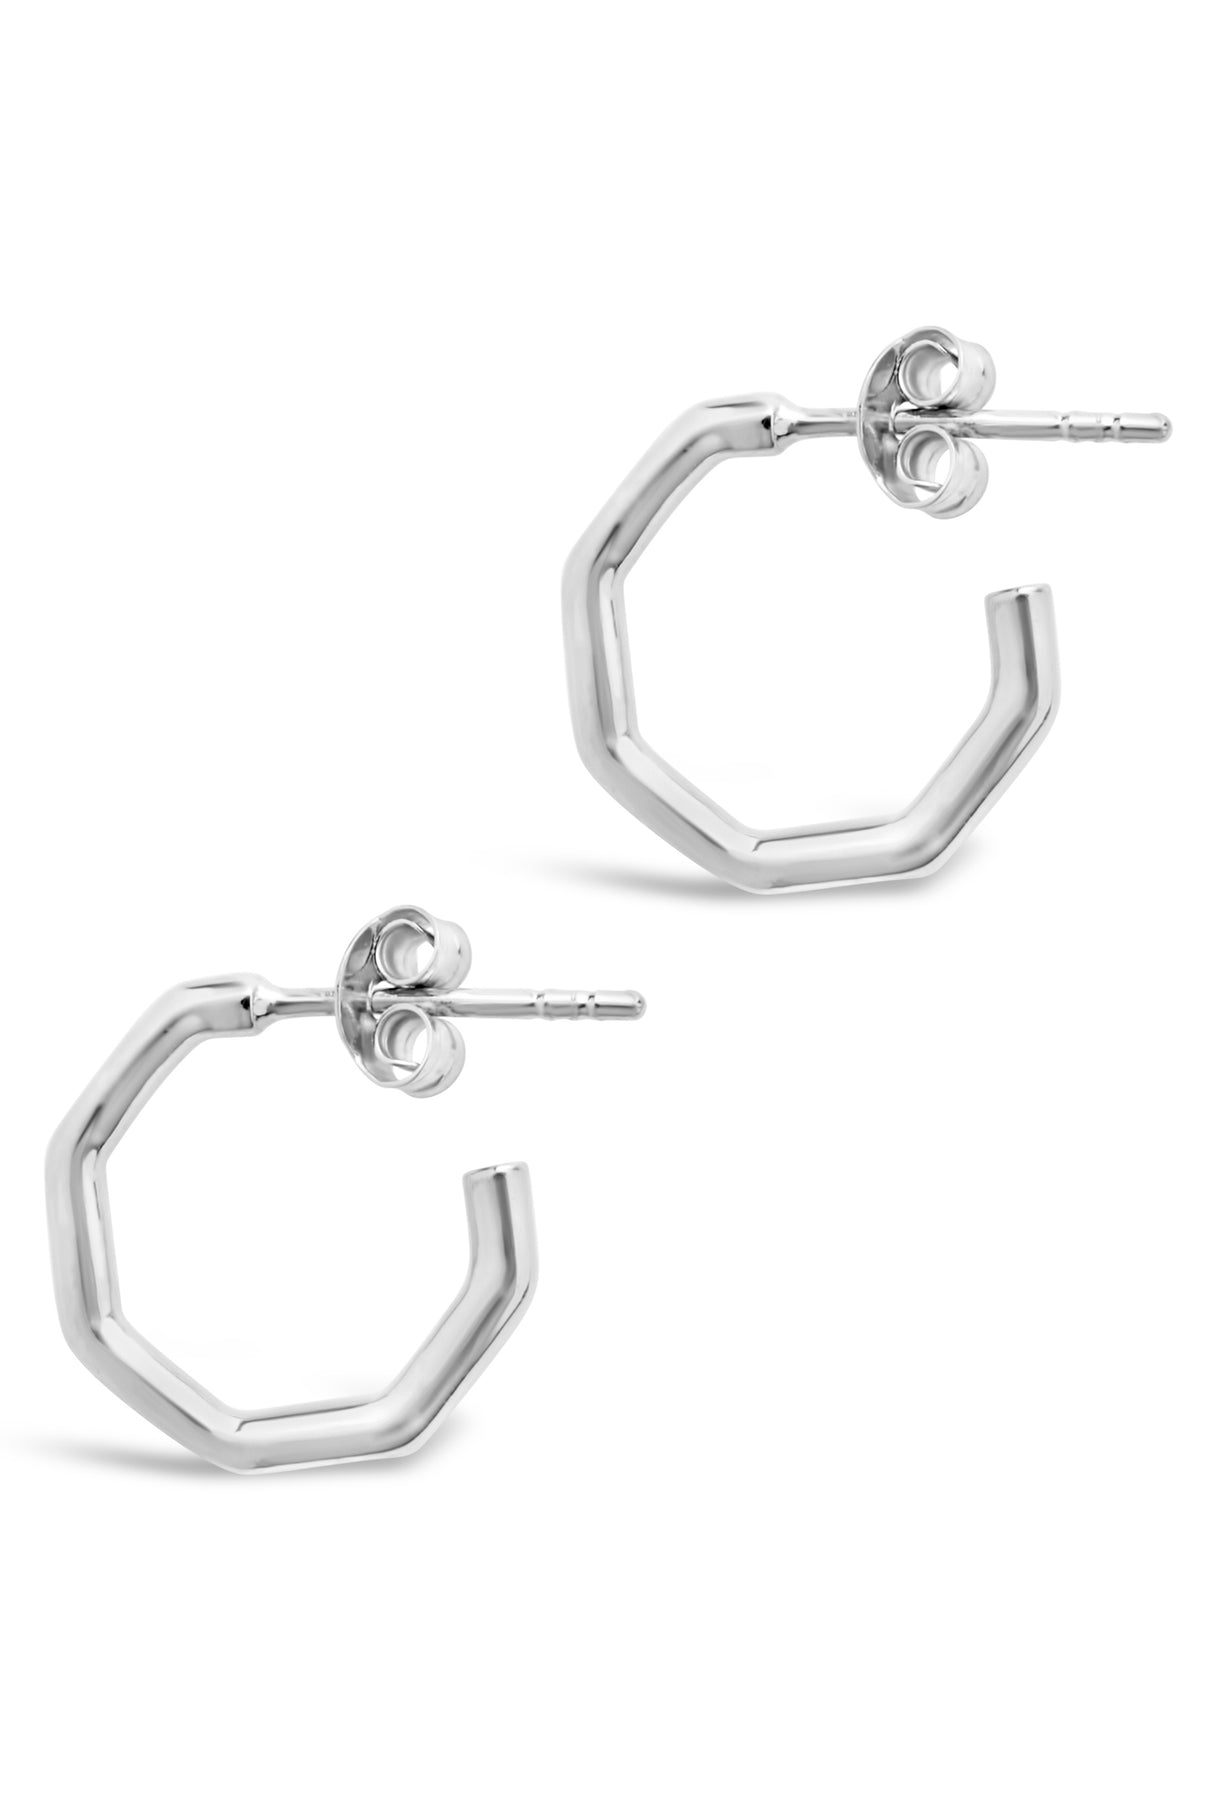 Octagon Hoop Earrings Sterling Silver